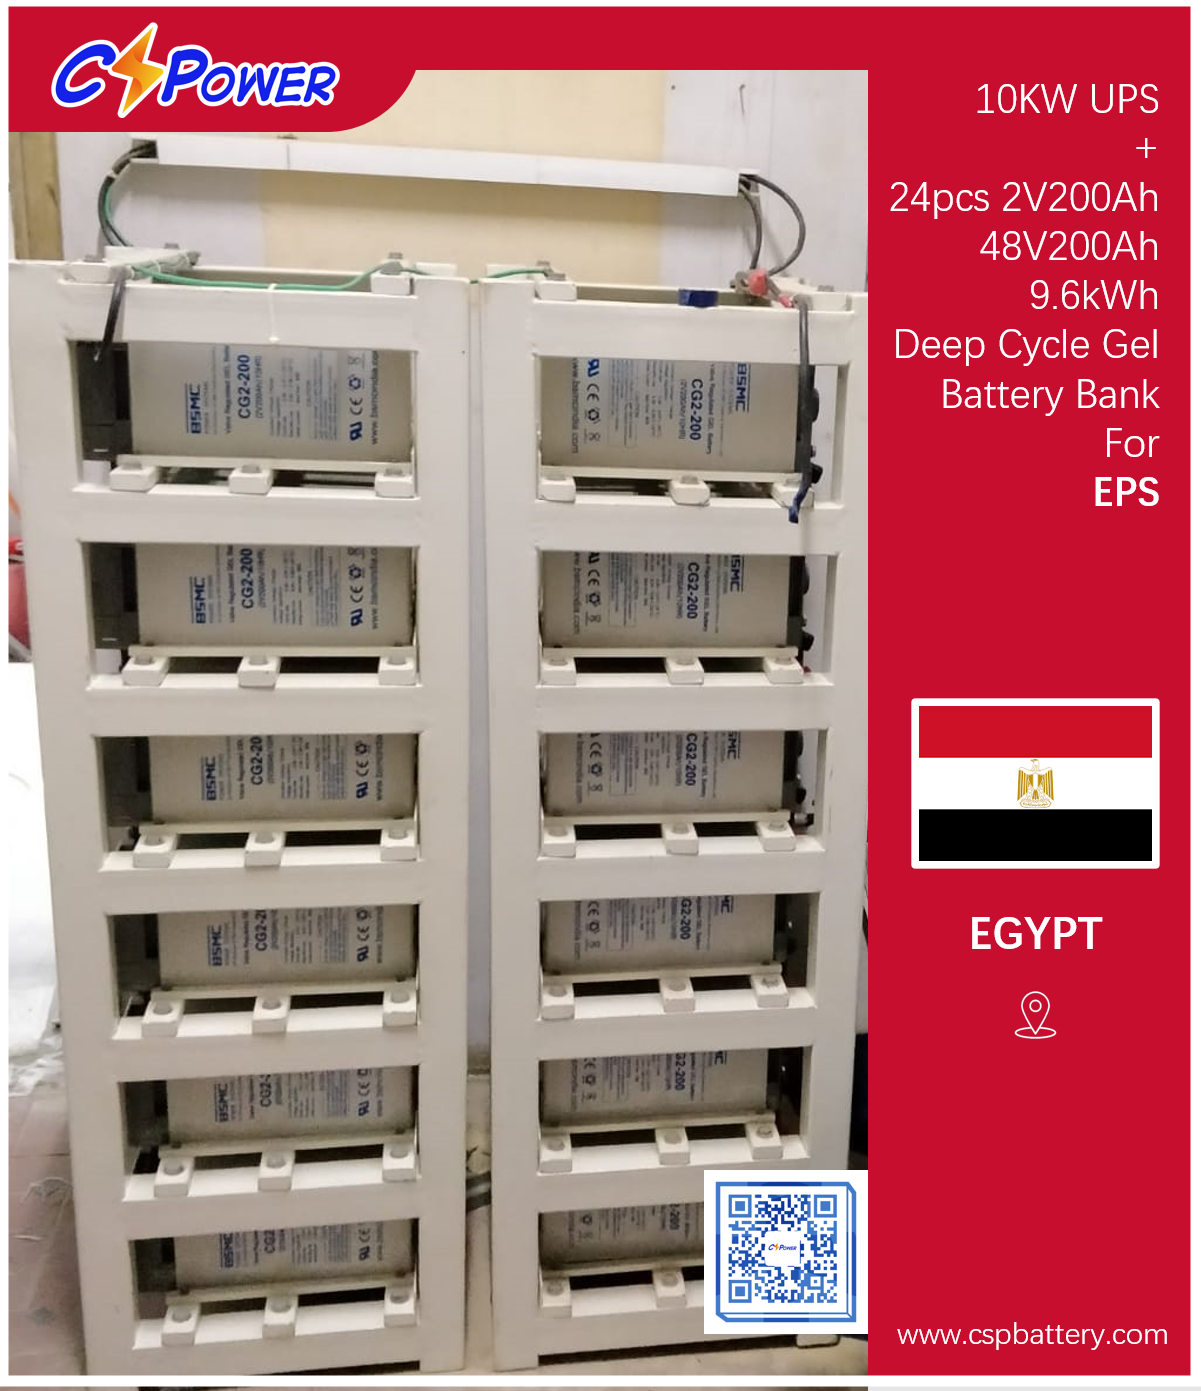 Proyecto de batería CSPower: batería de gel solar de ciclo profundo de 24 Uds 2V 200AH para EPS